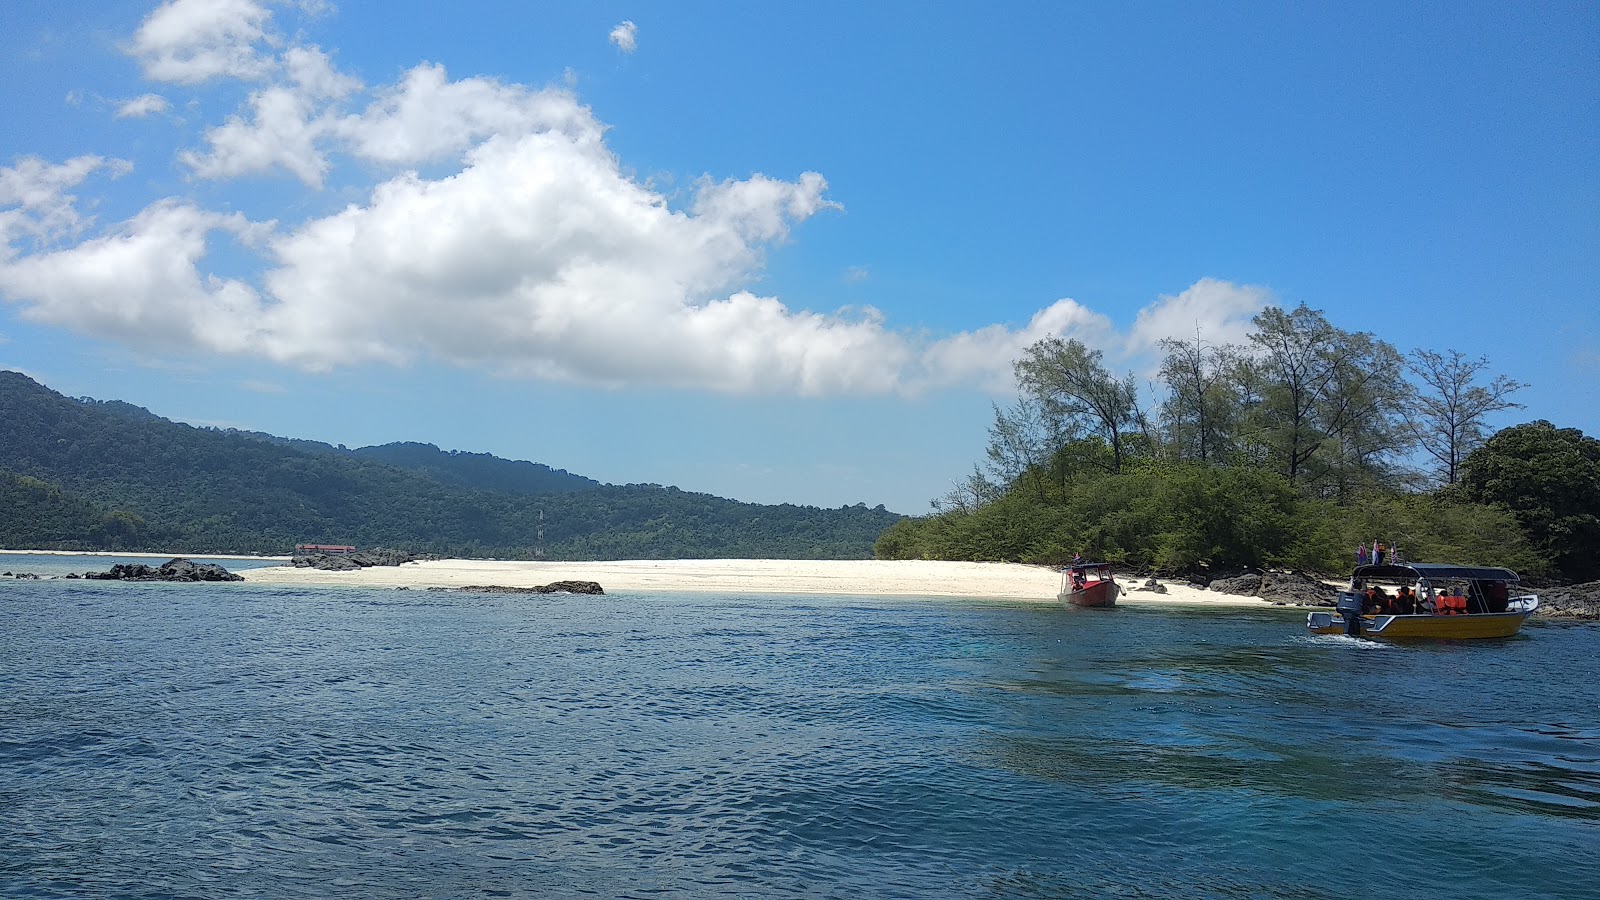 Pulau Mentigi'in fotoğrafı çok temiz temizlik seviyesi ile